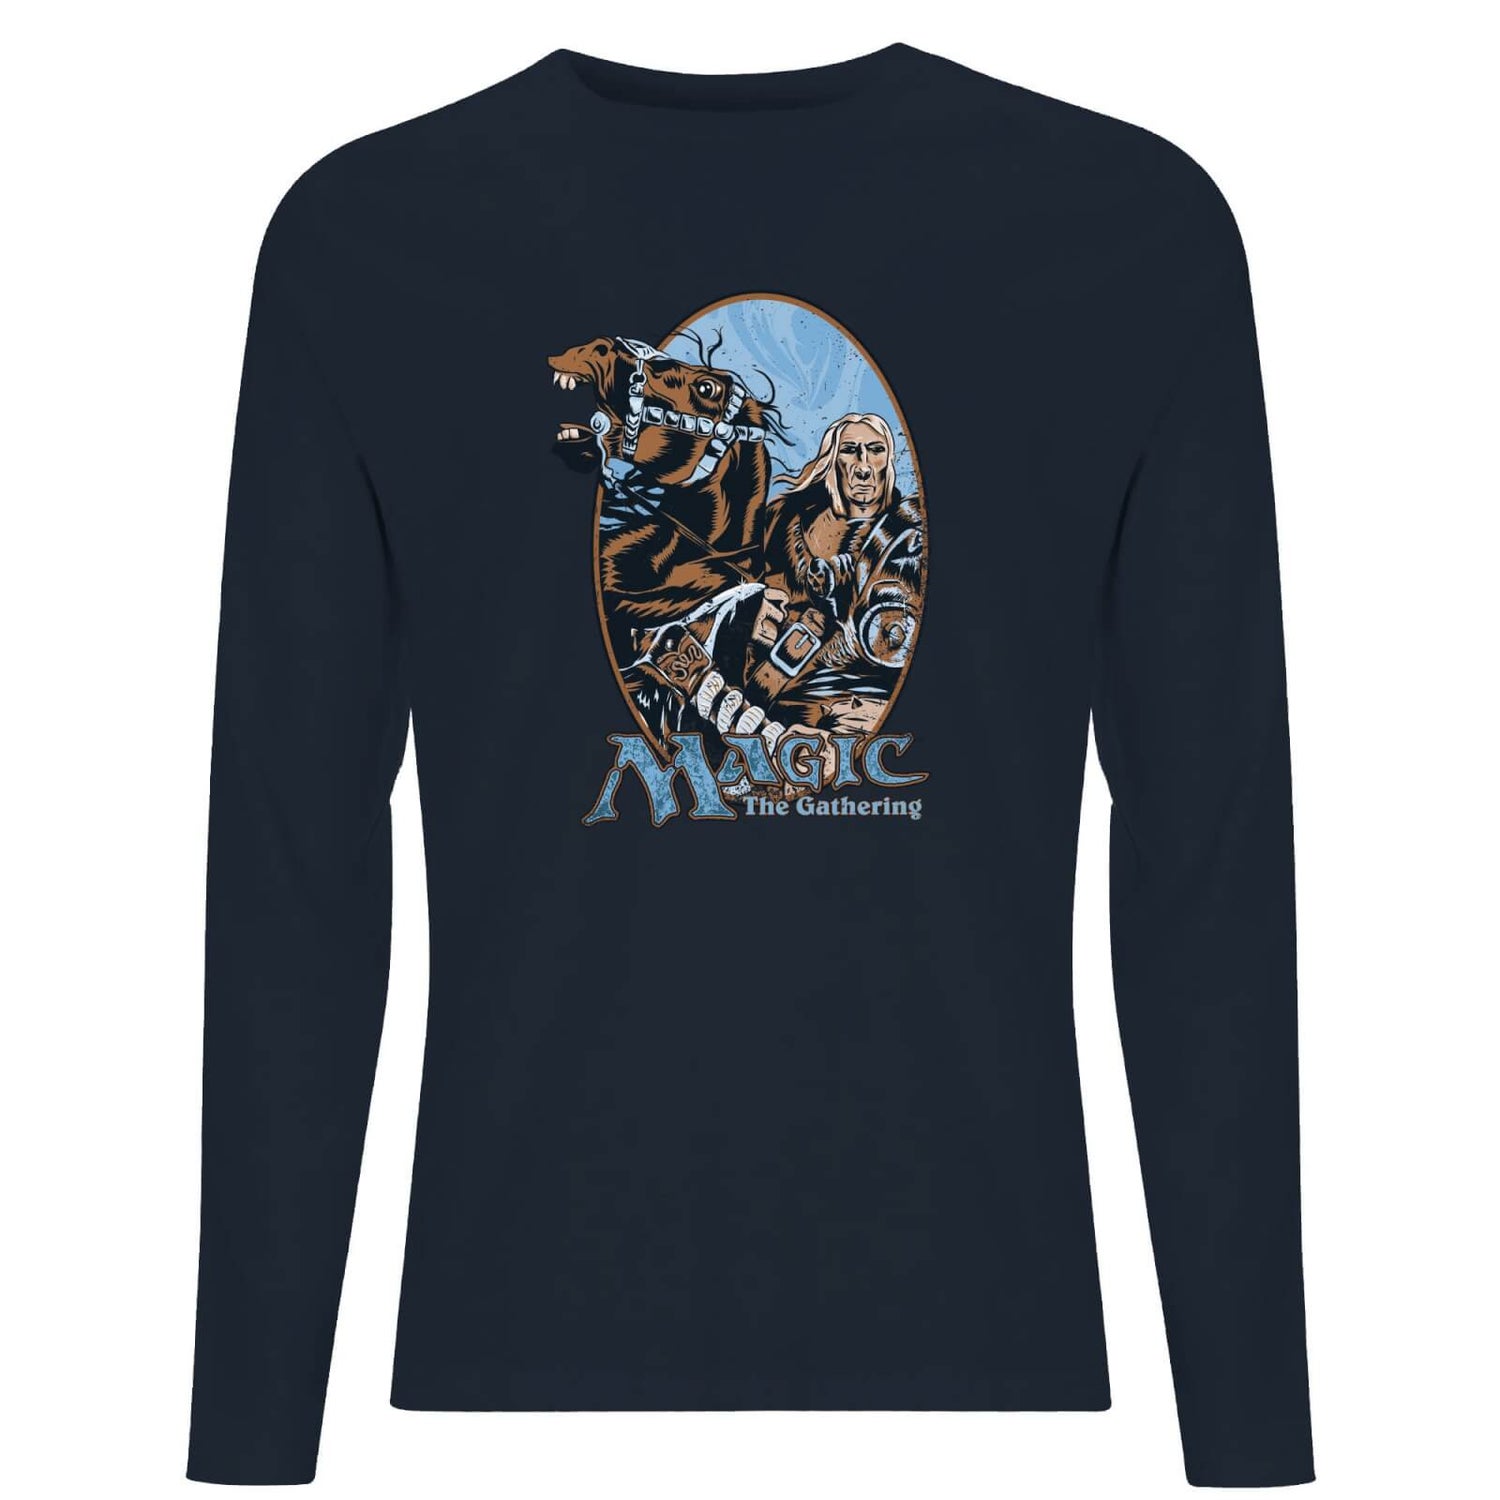 Magic: the Gathering Retro Unisex Long Sleeve T-Shirt - Navy